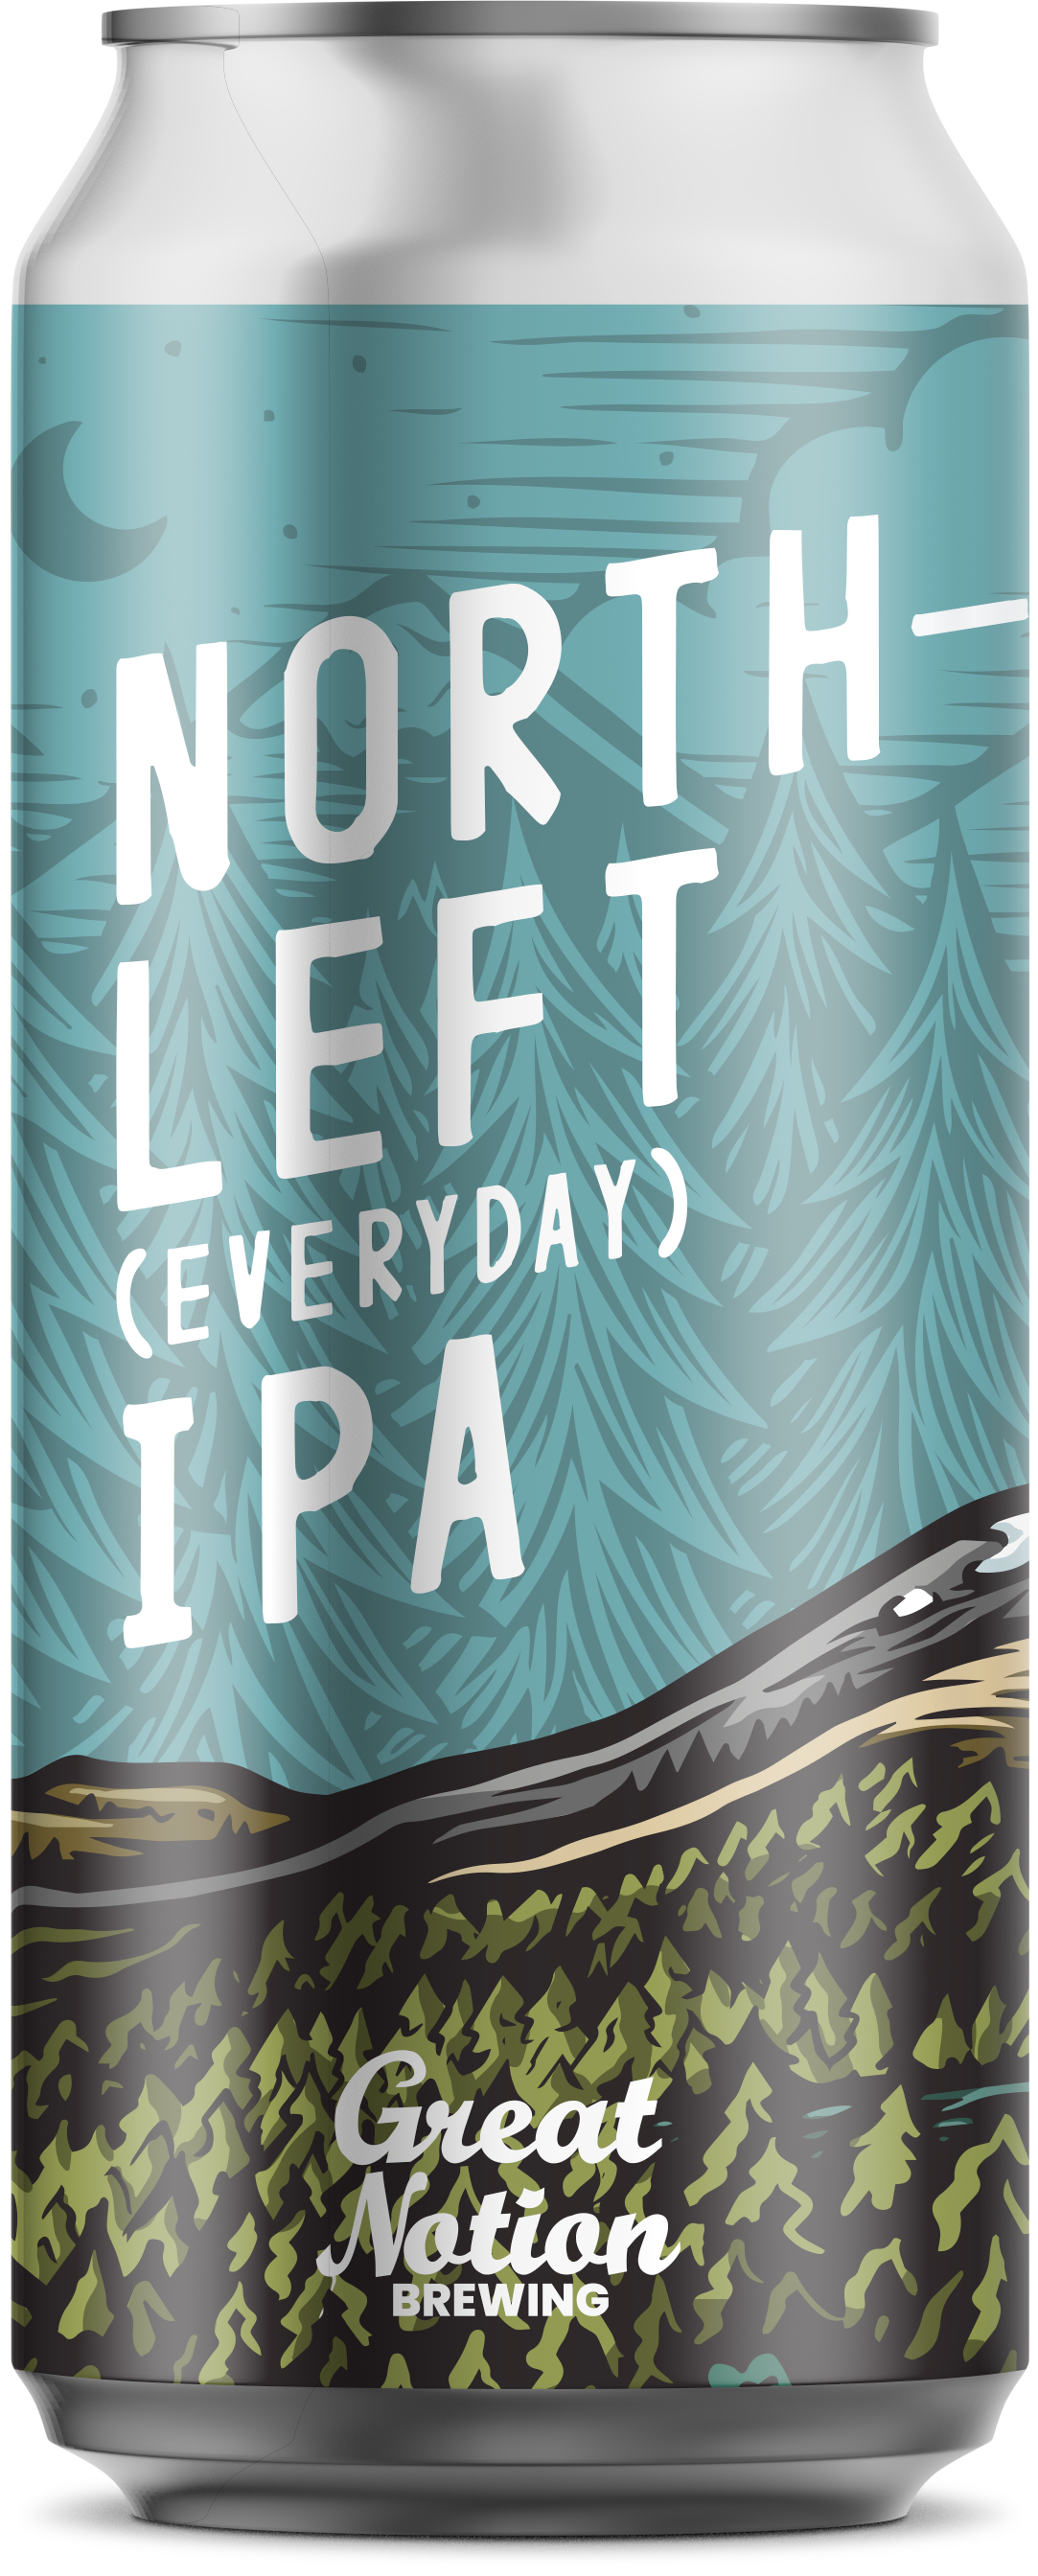 Northleft (Everyday) IPA